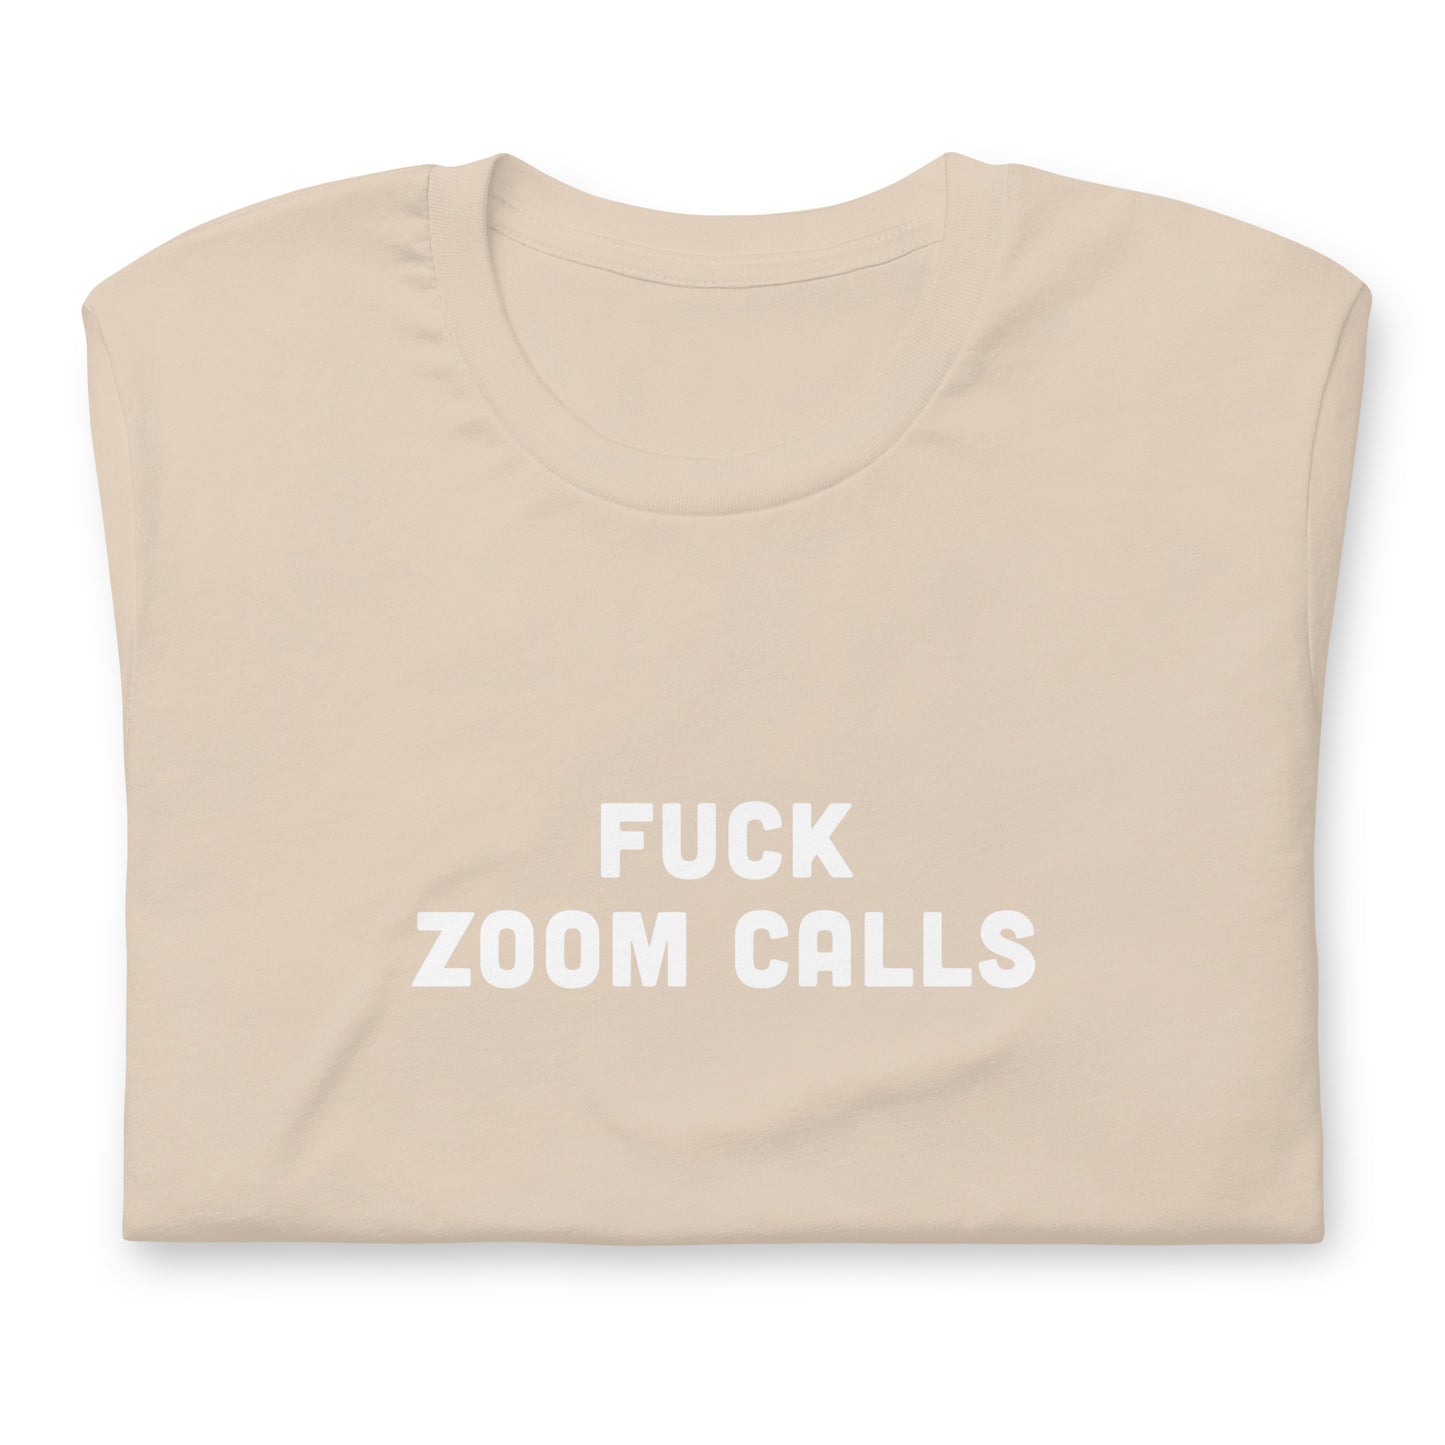 Fuck Zoom Calls T-Shirt Size L Color Asphalt